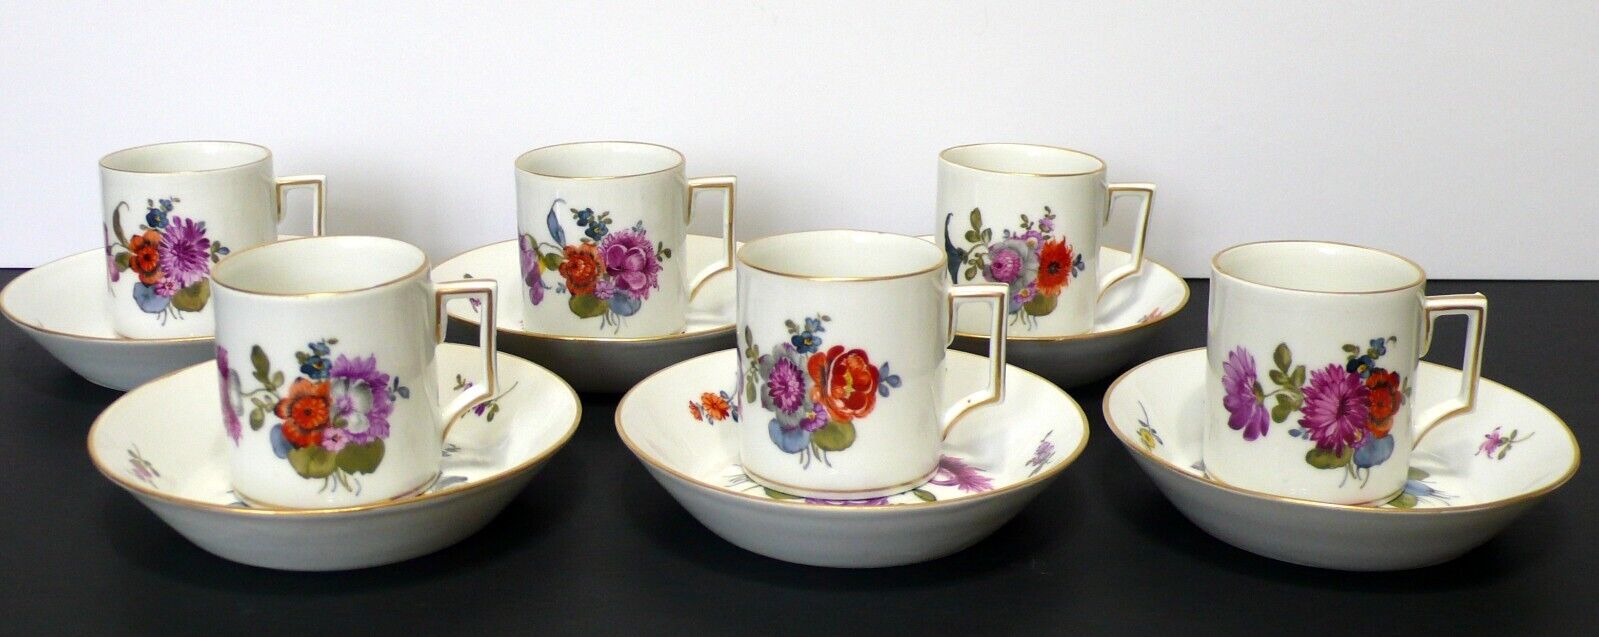 6 Antique Royal Vienna Austria Floral Porcelain Cups & Saucers Set